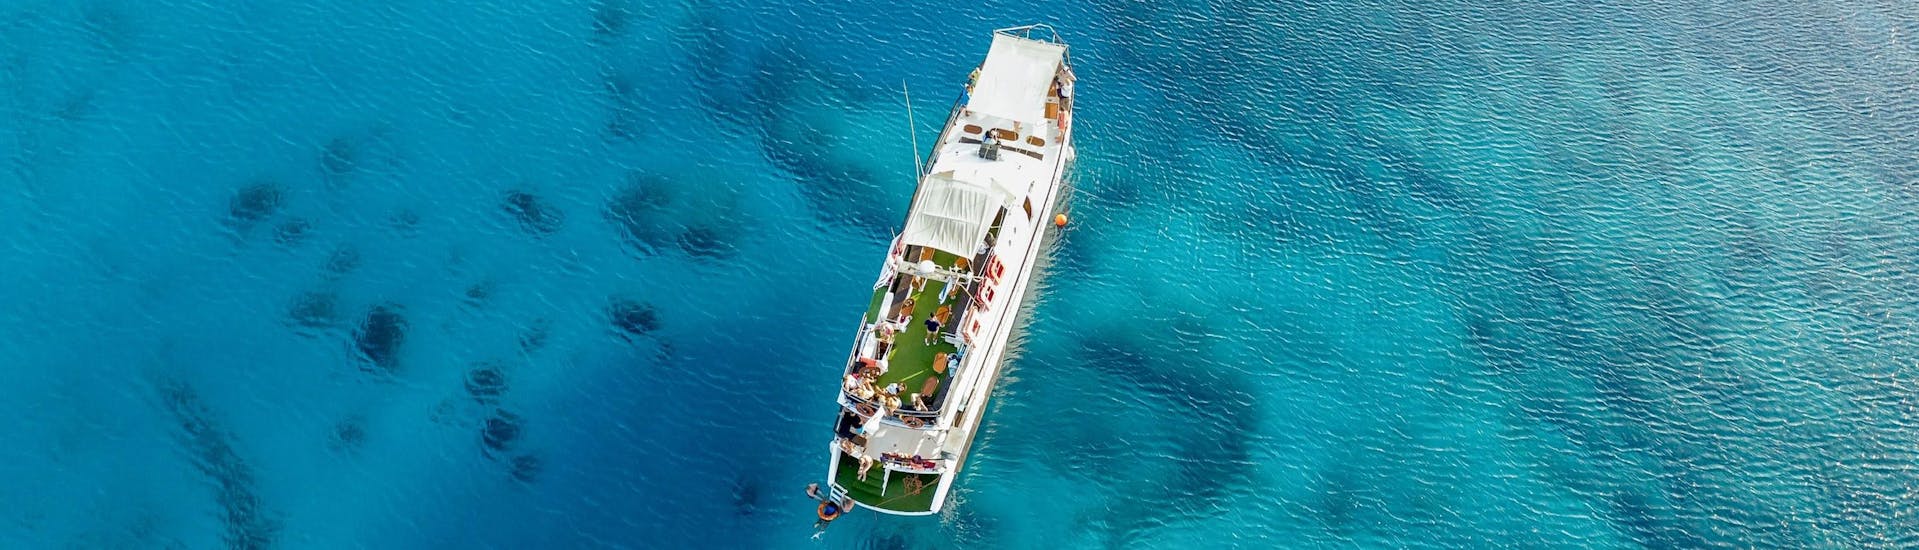 Boot von The Cyprus Cruise Company in klarem blauem Wasser.